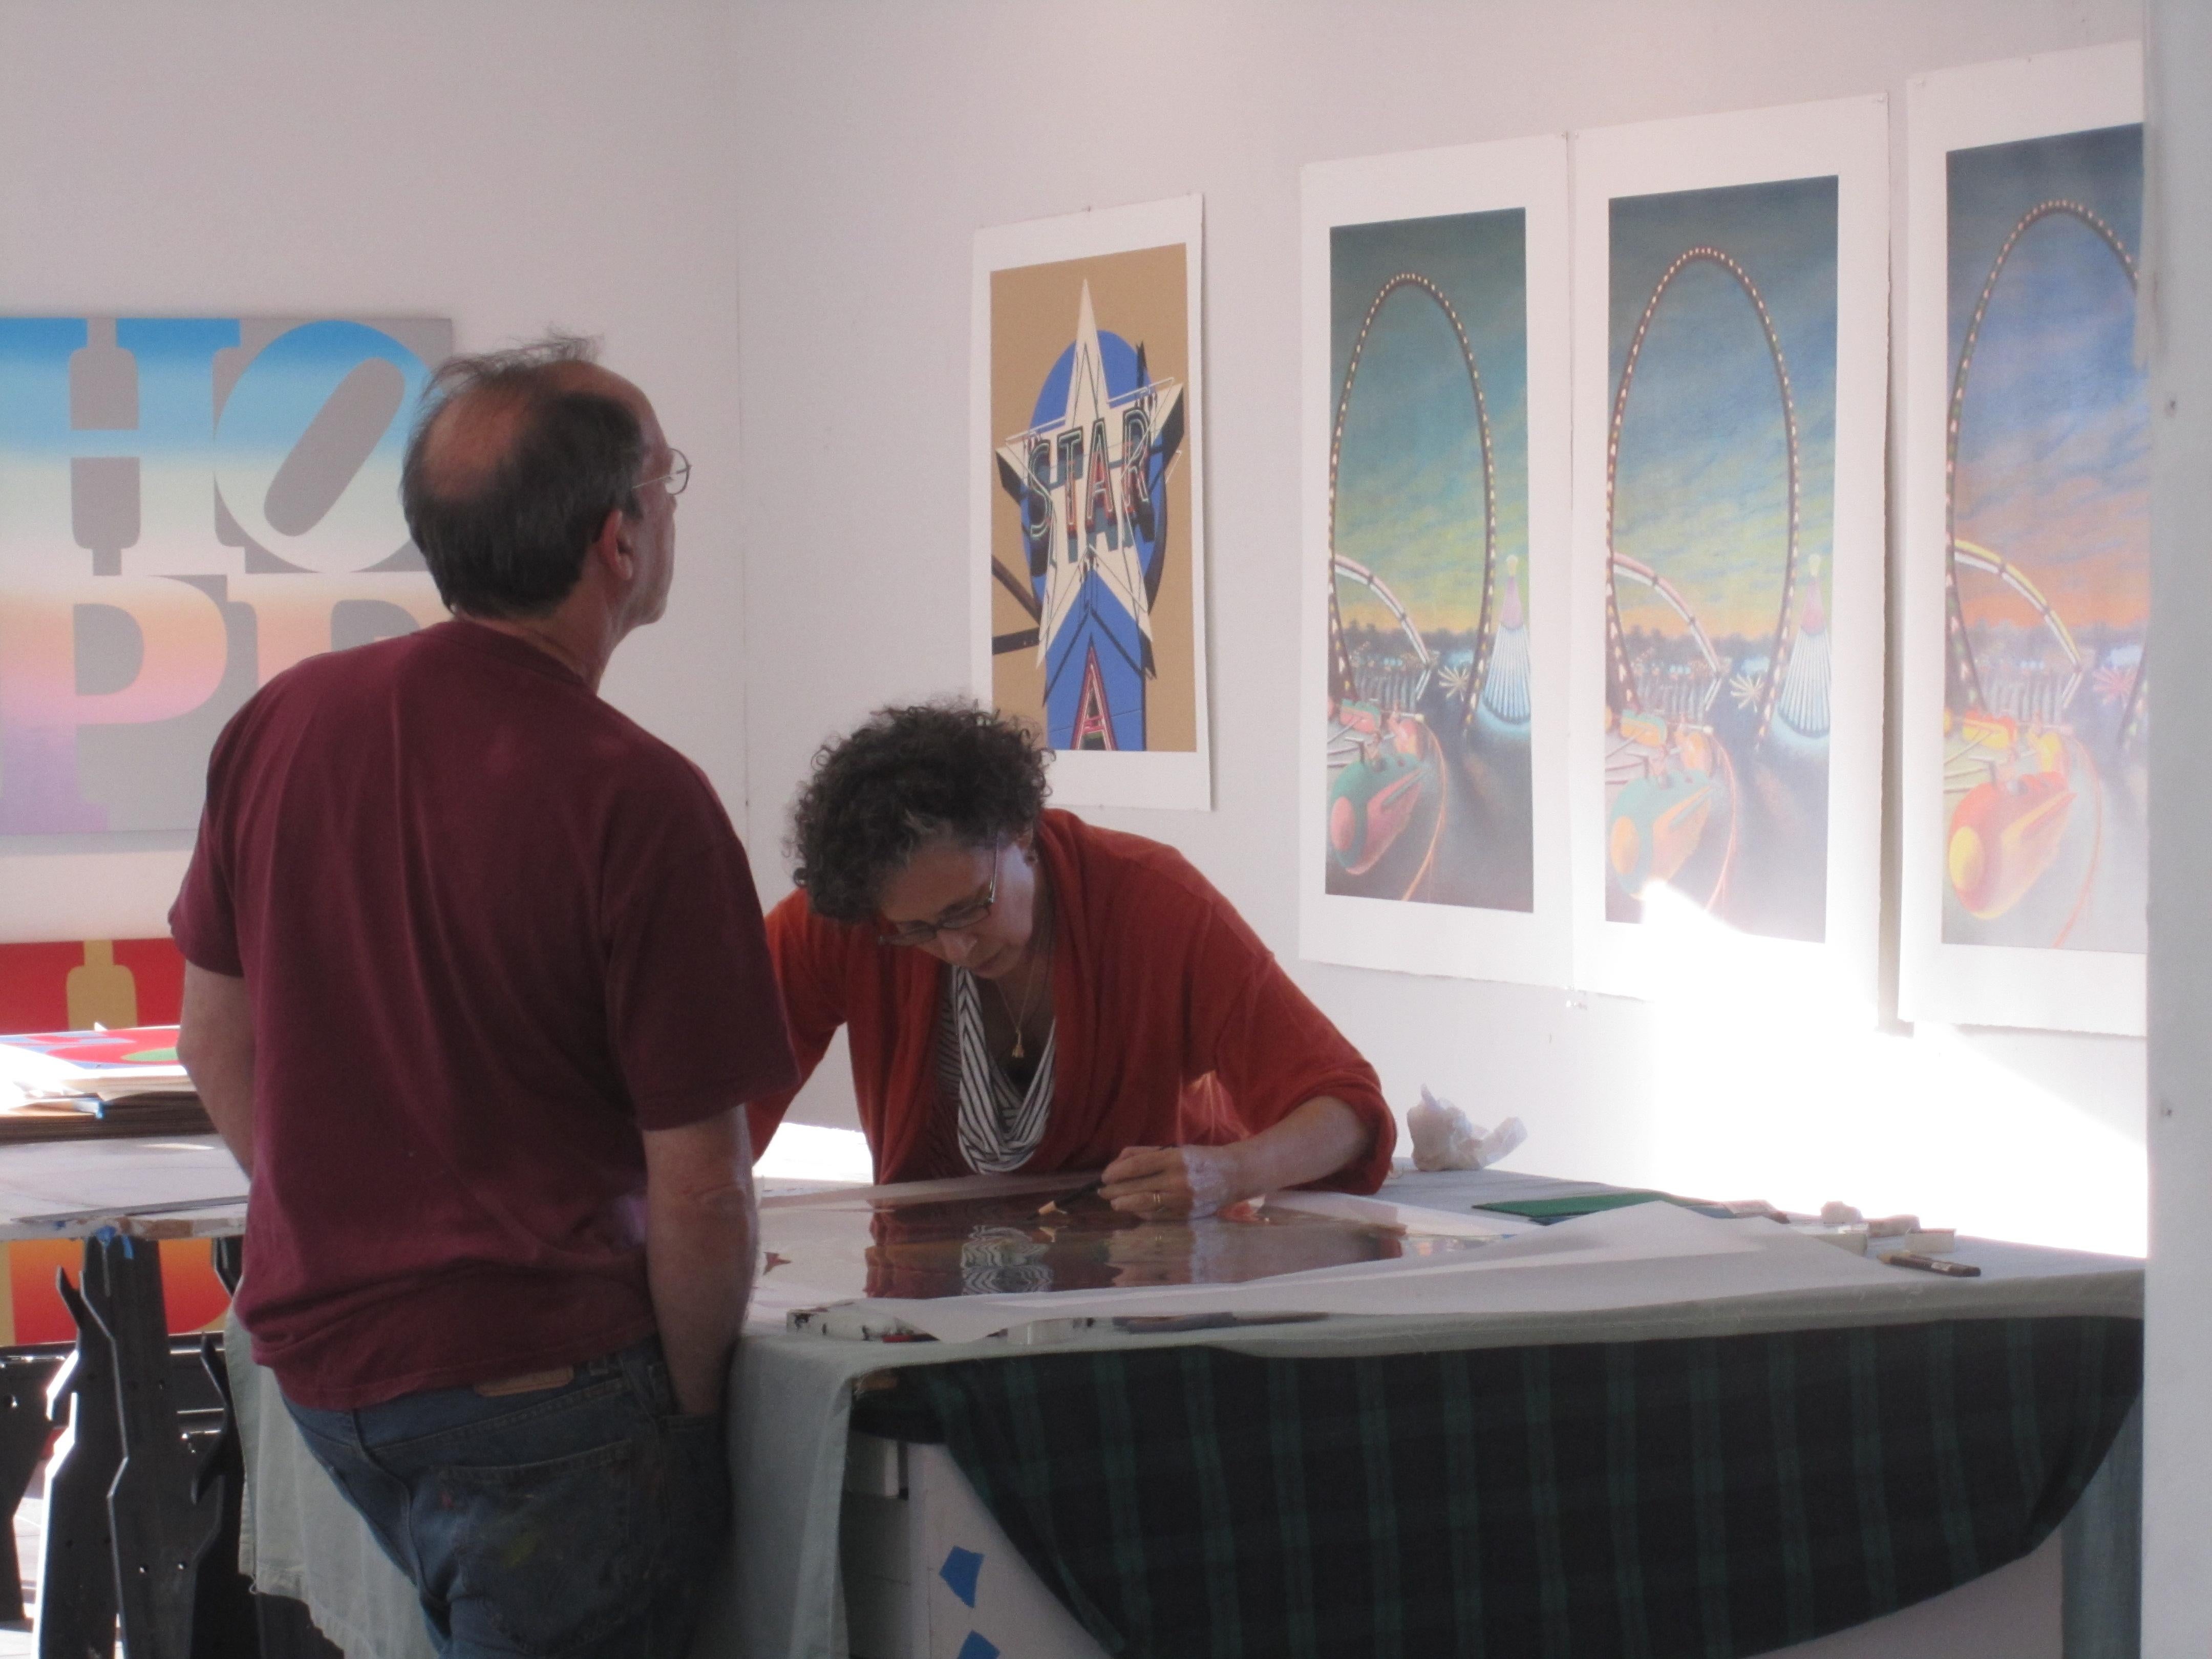 Jane Dickson stellt seit drei Jahrzehnten ihre Gemälde, Zeichnungen und Drucke in Museen und Galerien im In- und Ausland aus. Sie arbeitet häufig mit ungewöhnlichen Oberflächen wie Kunstrasen, Sandpapier, Vinyl und Teppich, um die impliziten